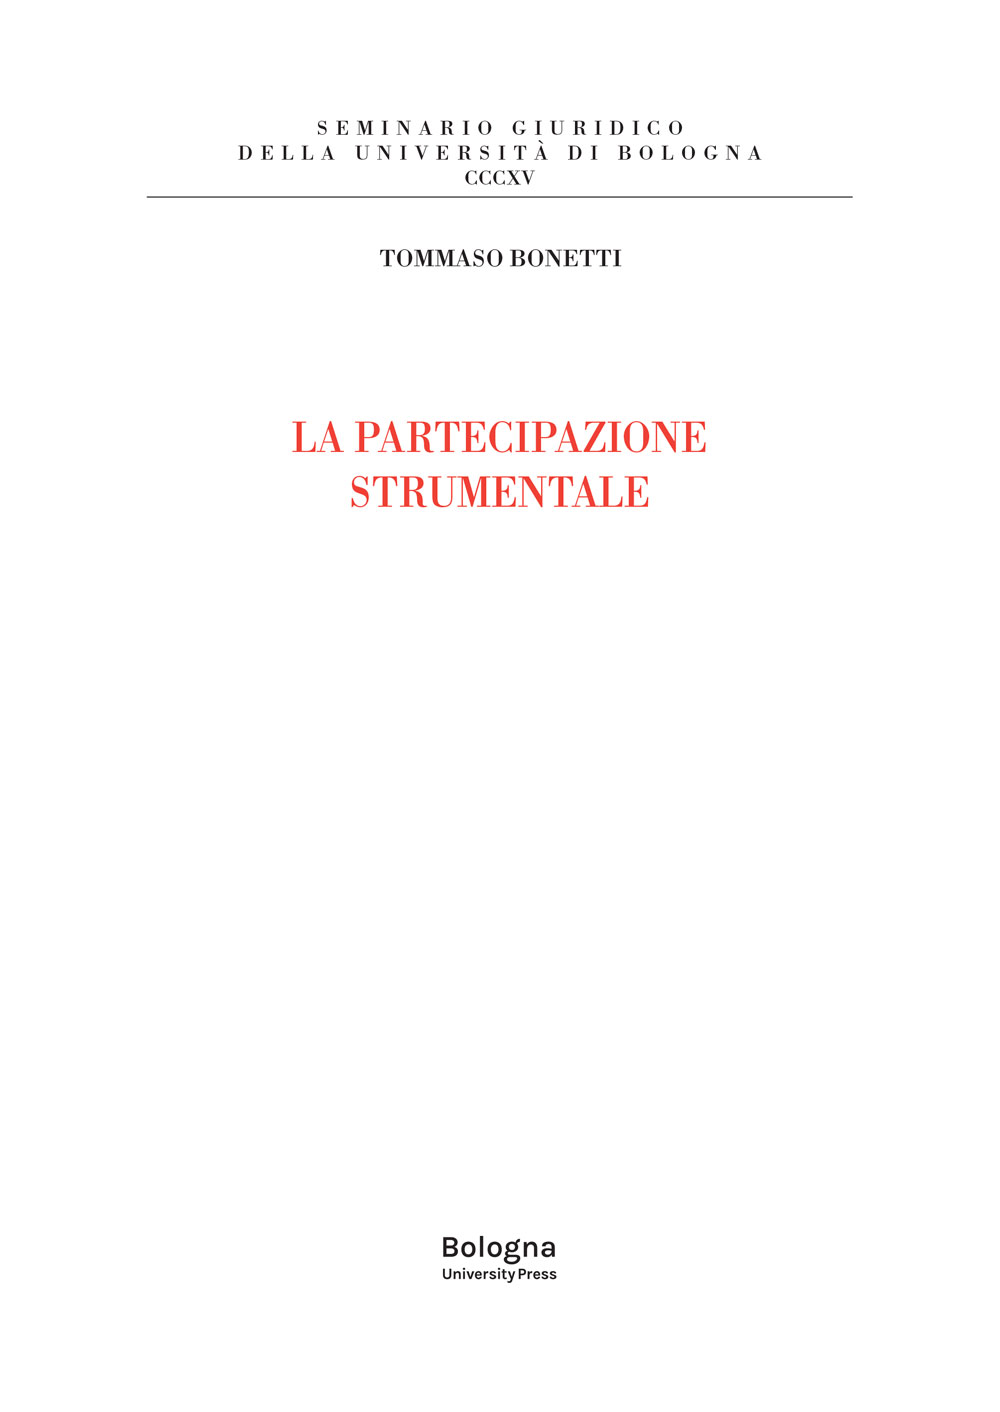 La partecipazione strumentale - Bologna University Press